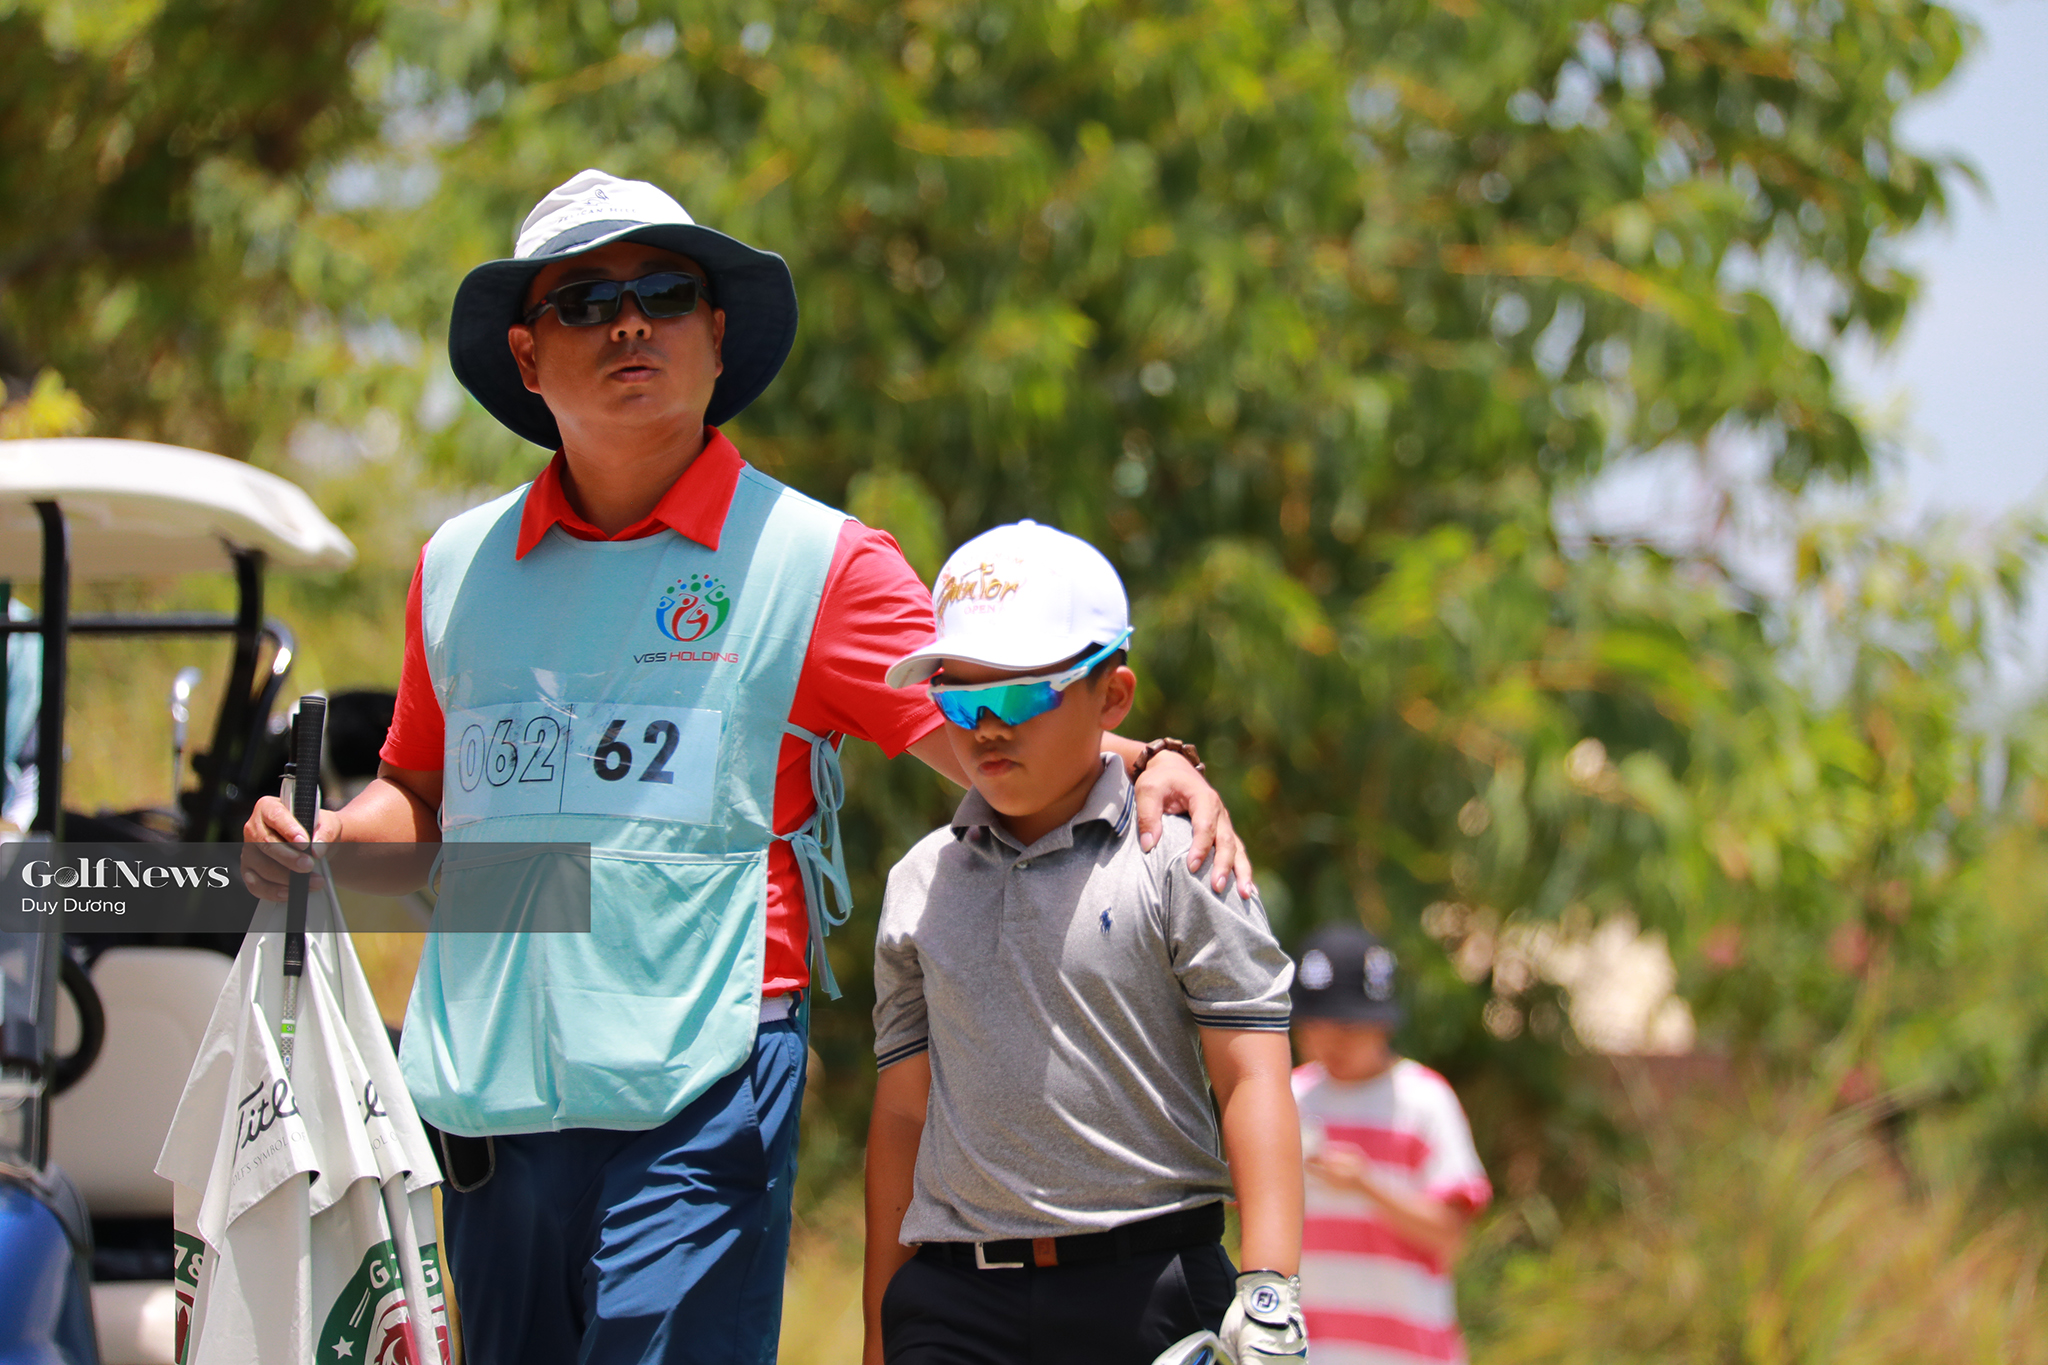 CLB Golf Thăng Long Junior tổ chức giải Foursome Cha & Con